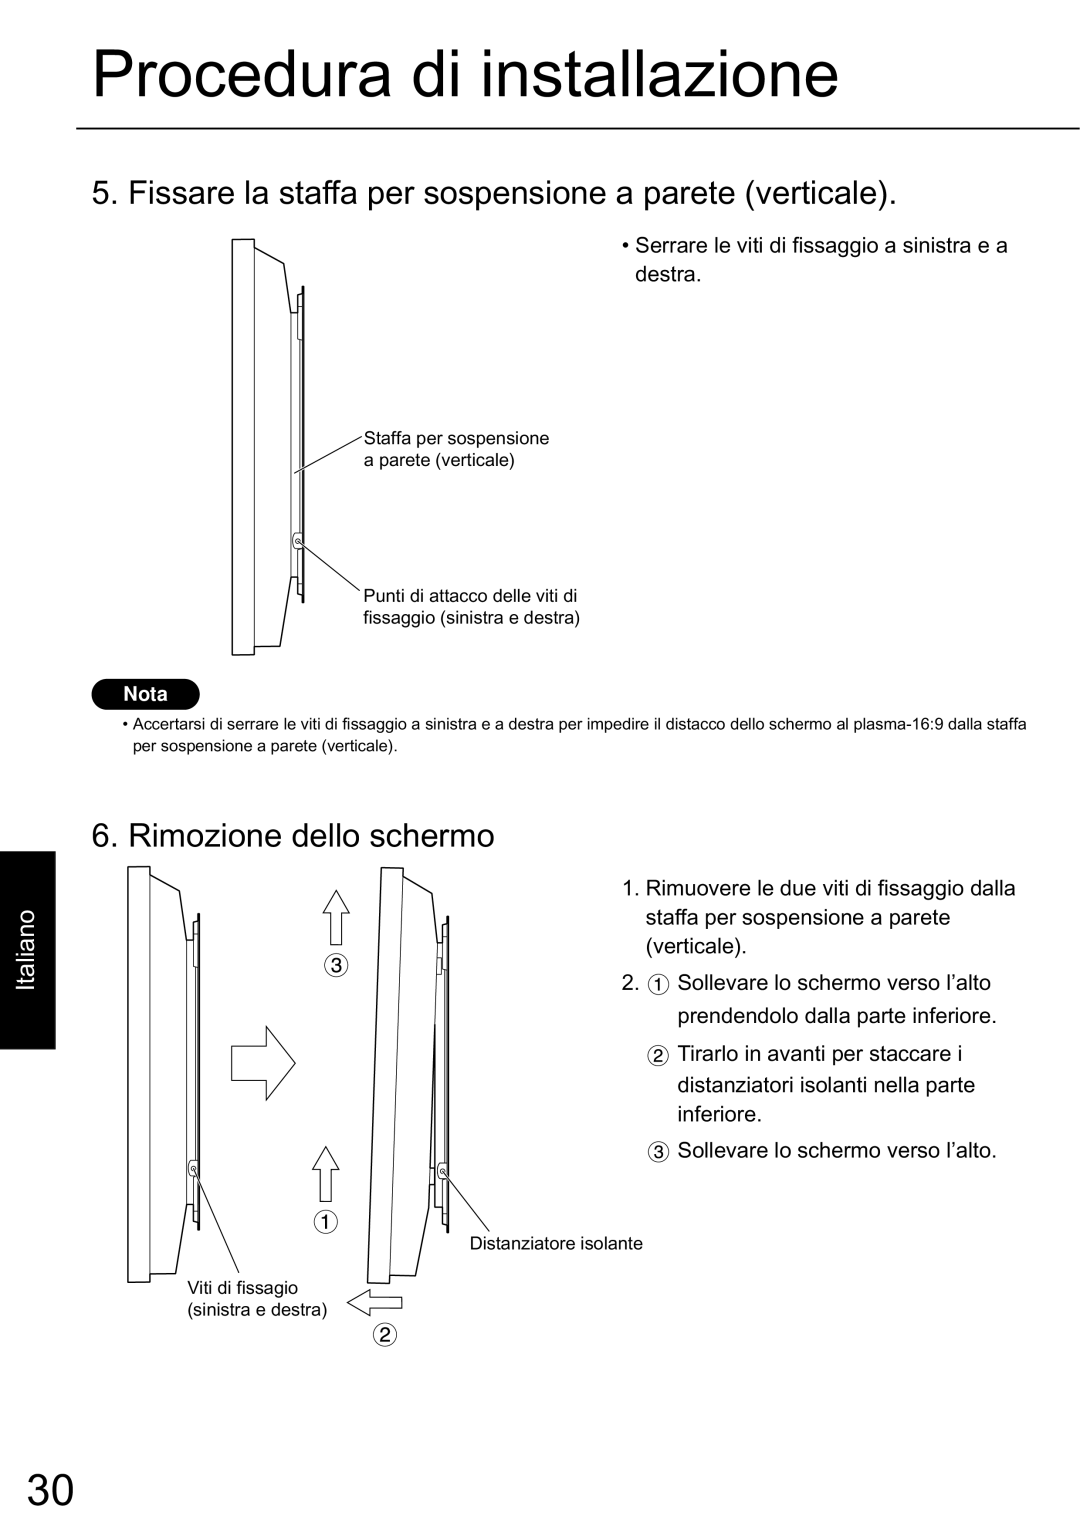 JVC TS-C50P6G, TS-C50P2G manual Procedura di installazione, Rimozione dello schermo, Italiano 